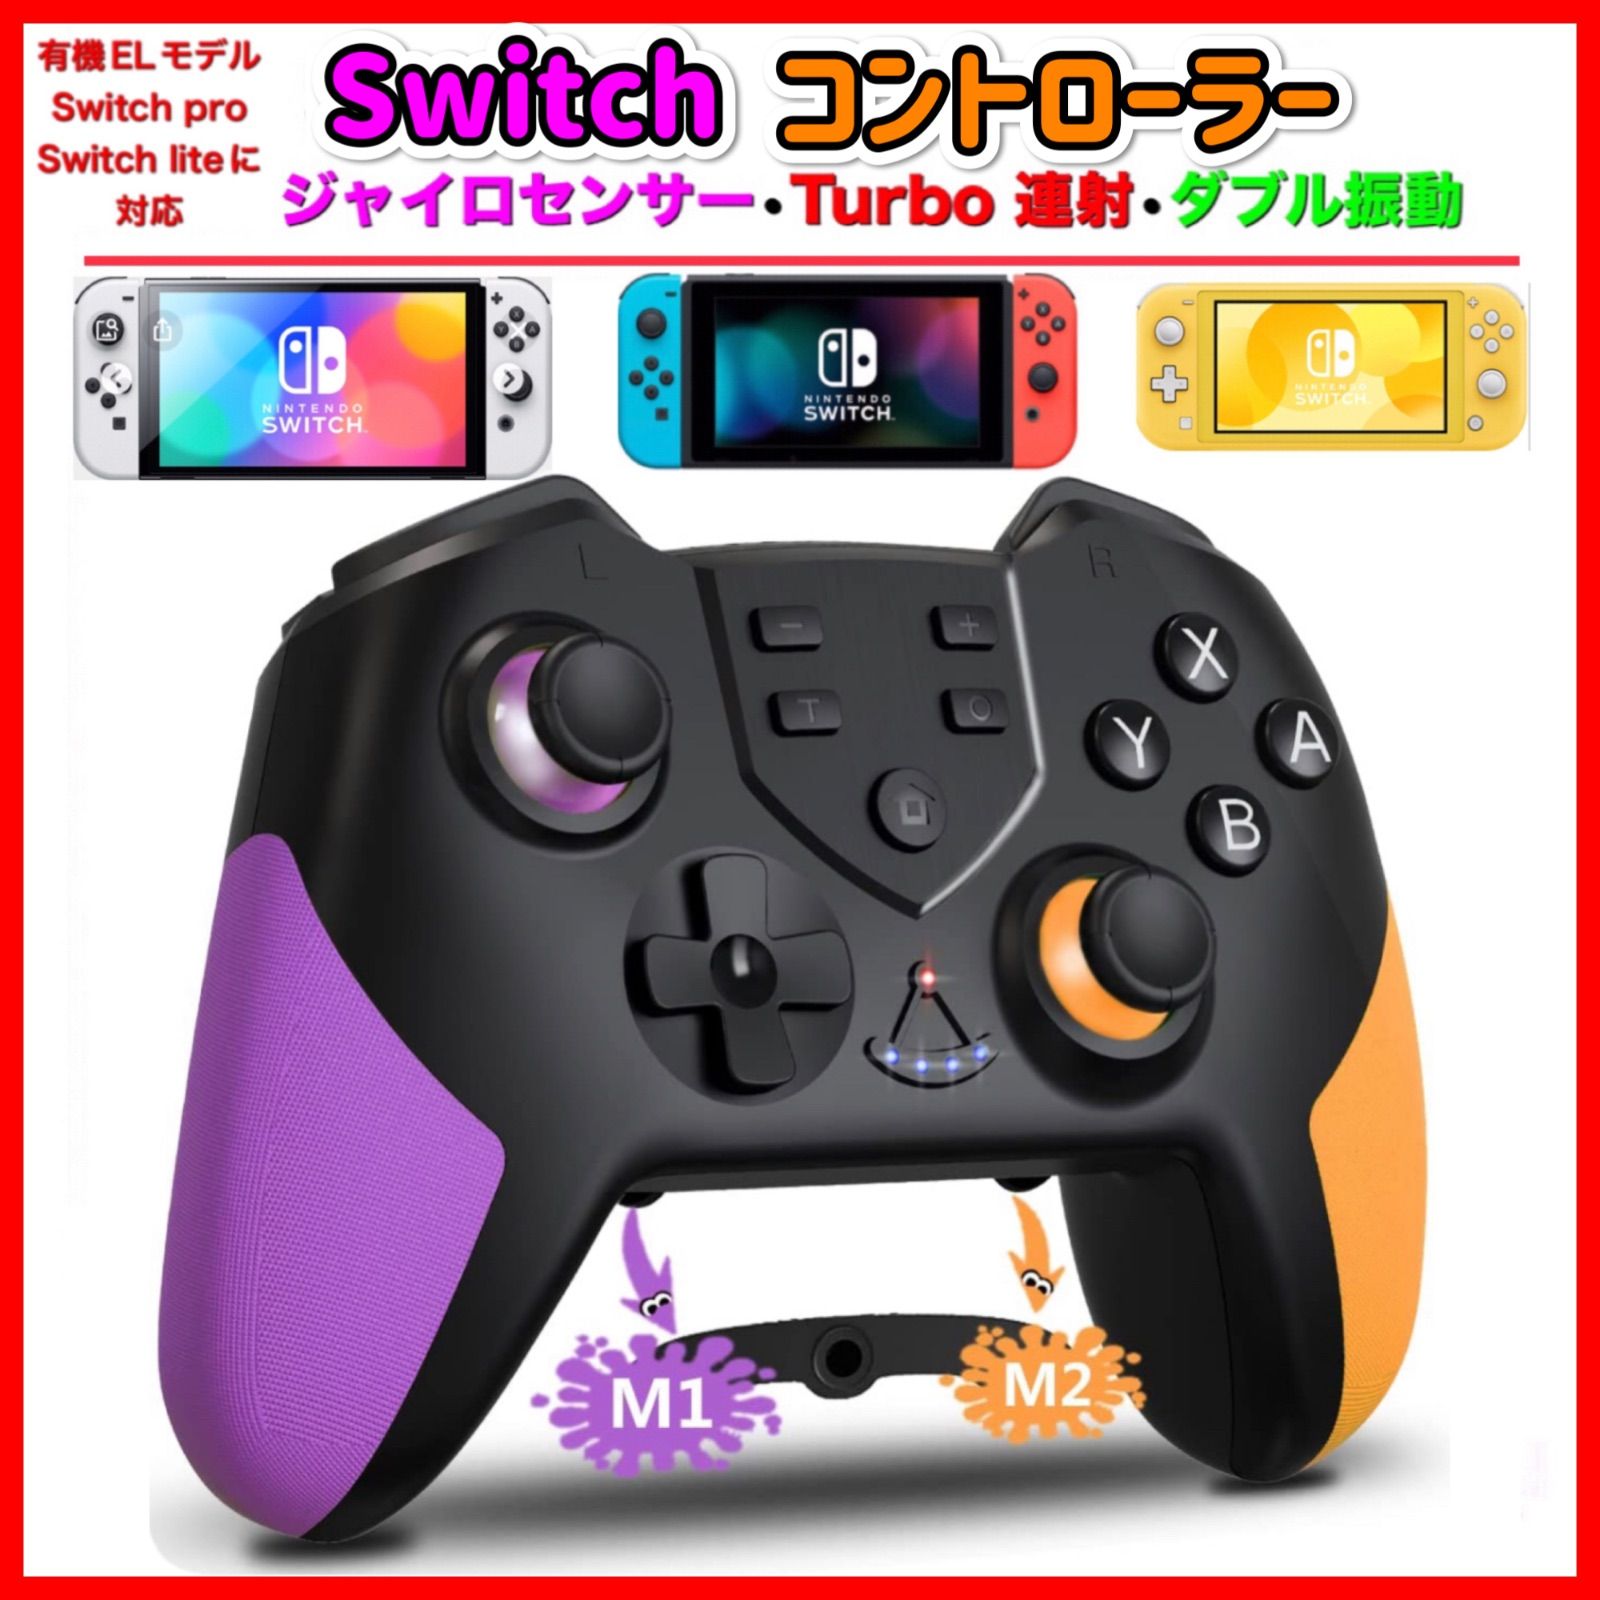 紫xオレンジ 新品 最新版 マクロ機能付き Switch コントローラー 